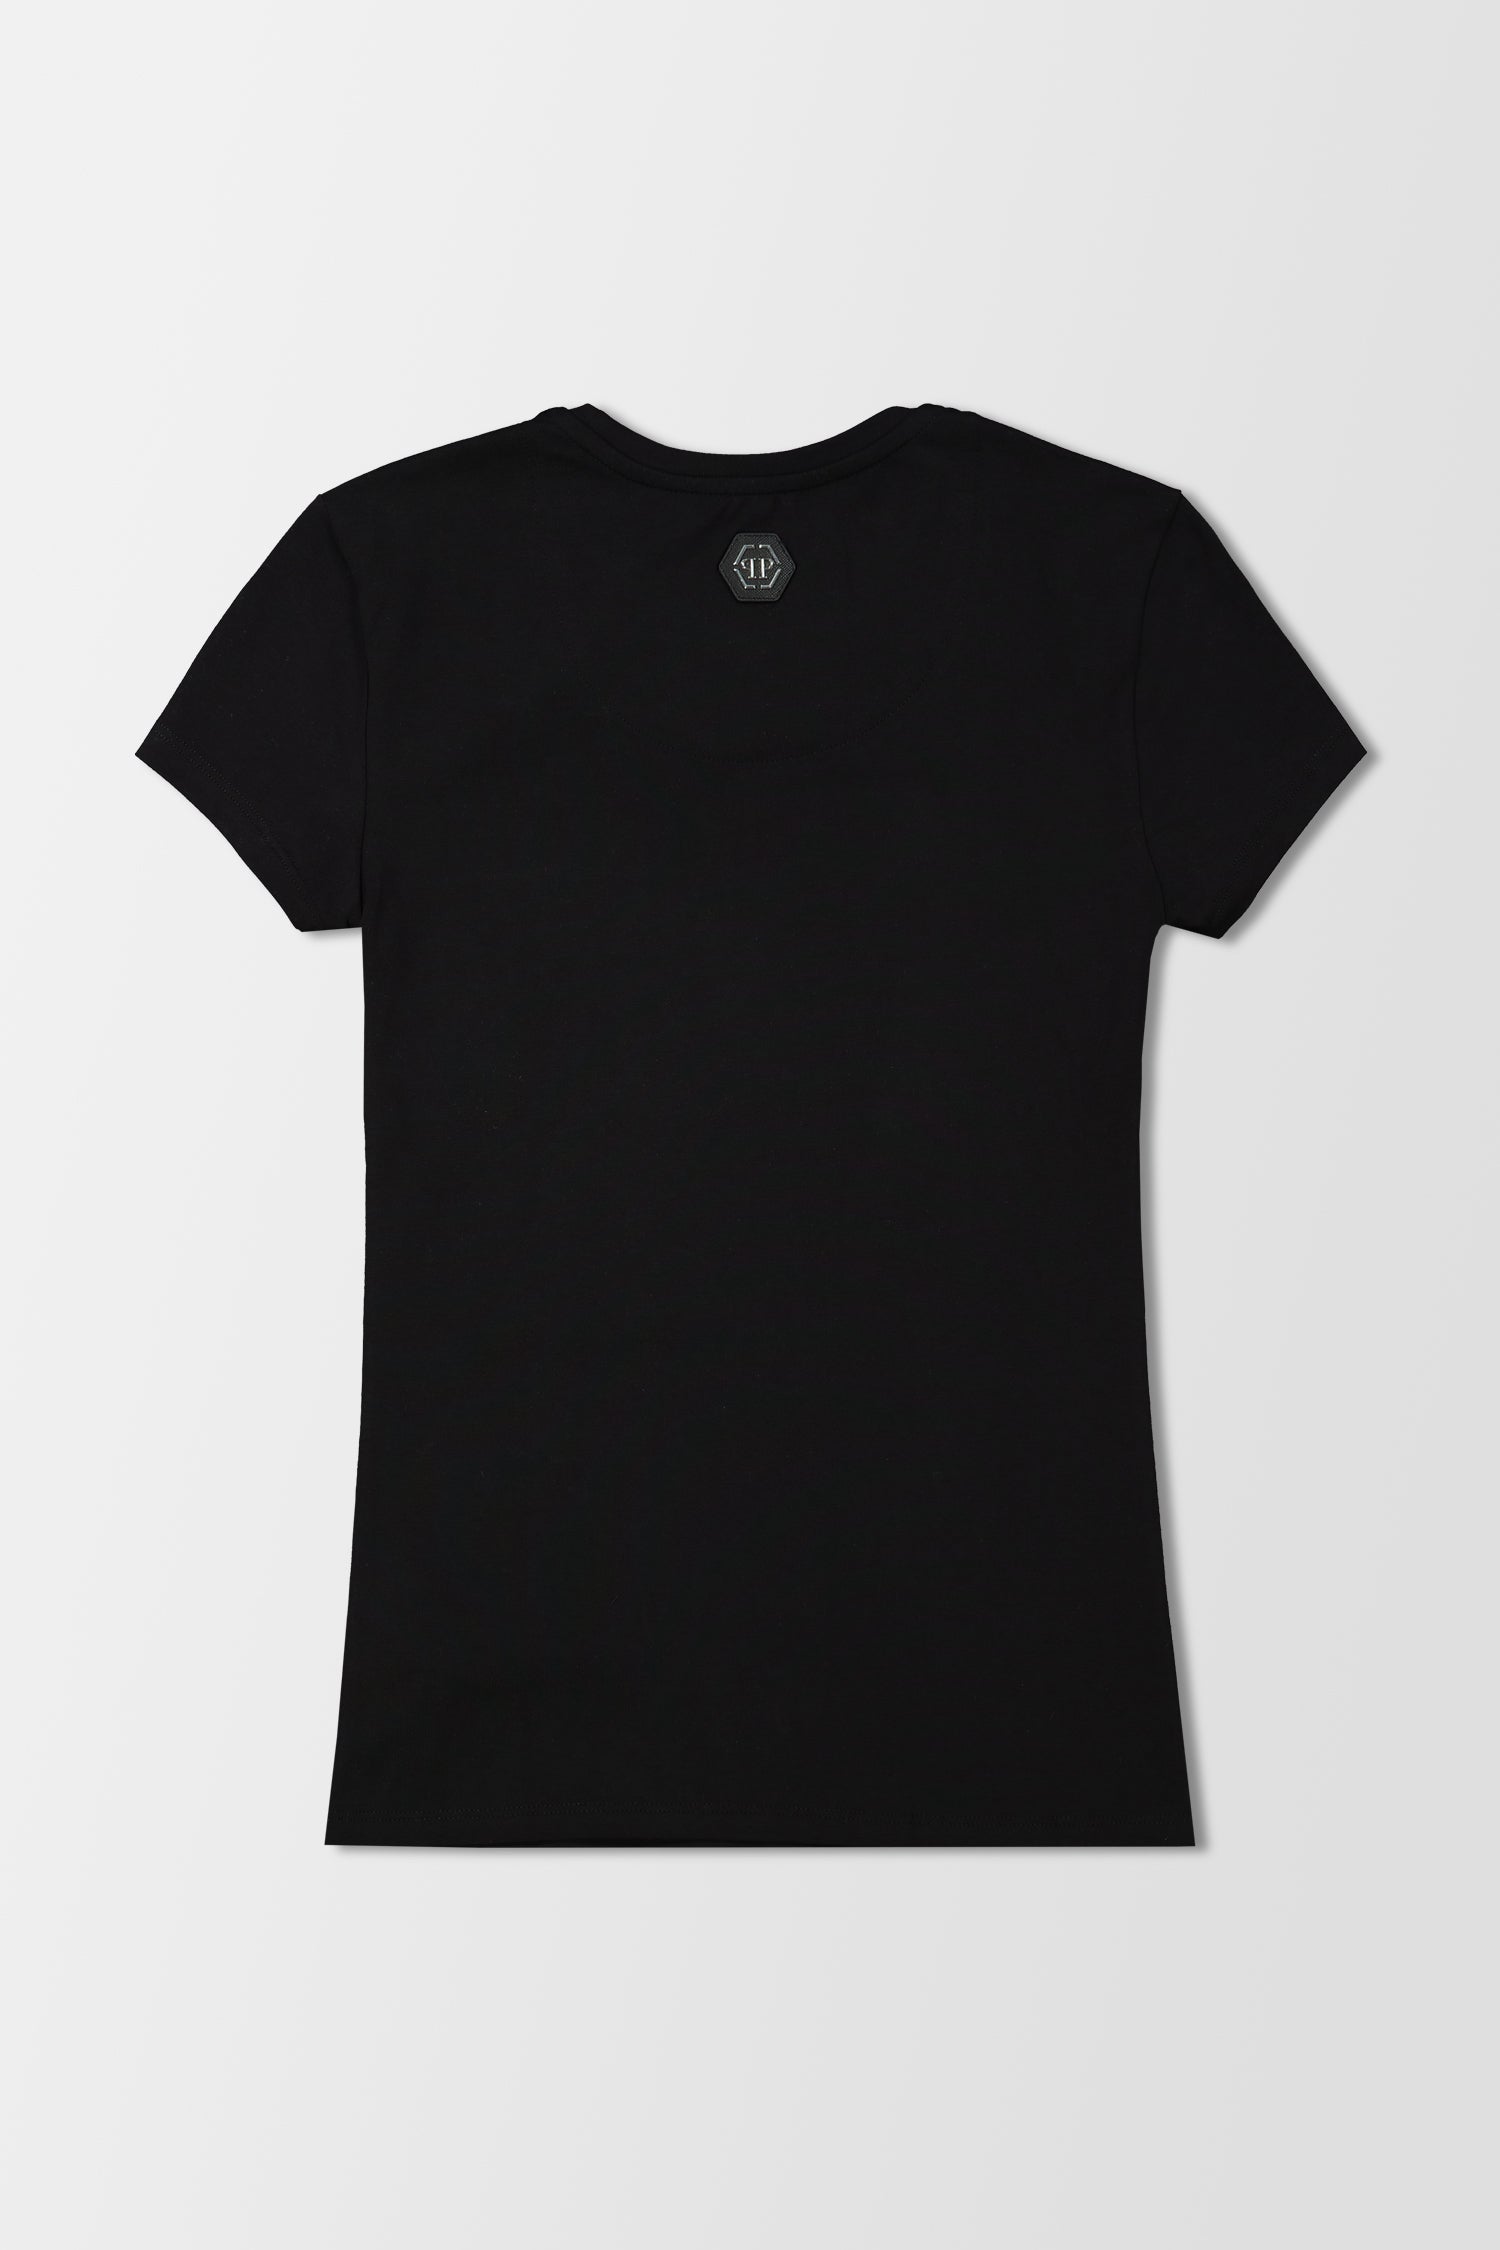 Philipp Plein Black Round Neck Plein T-Shirt